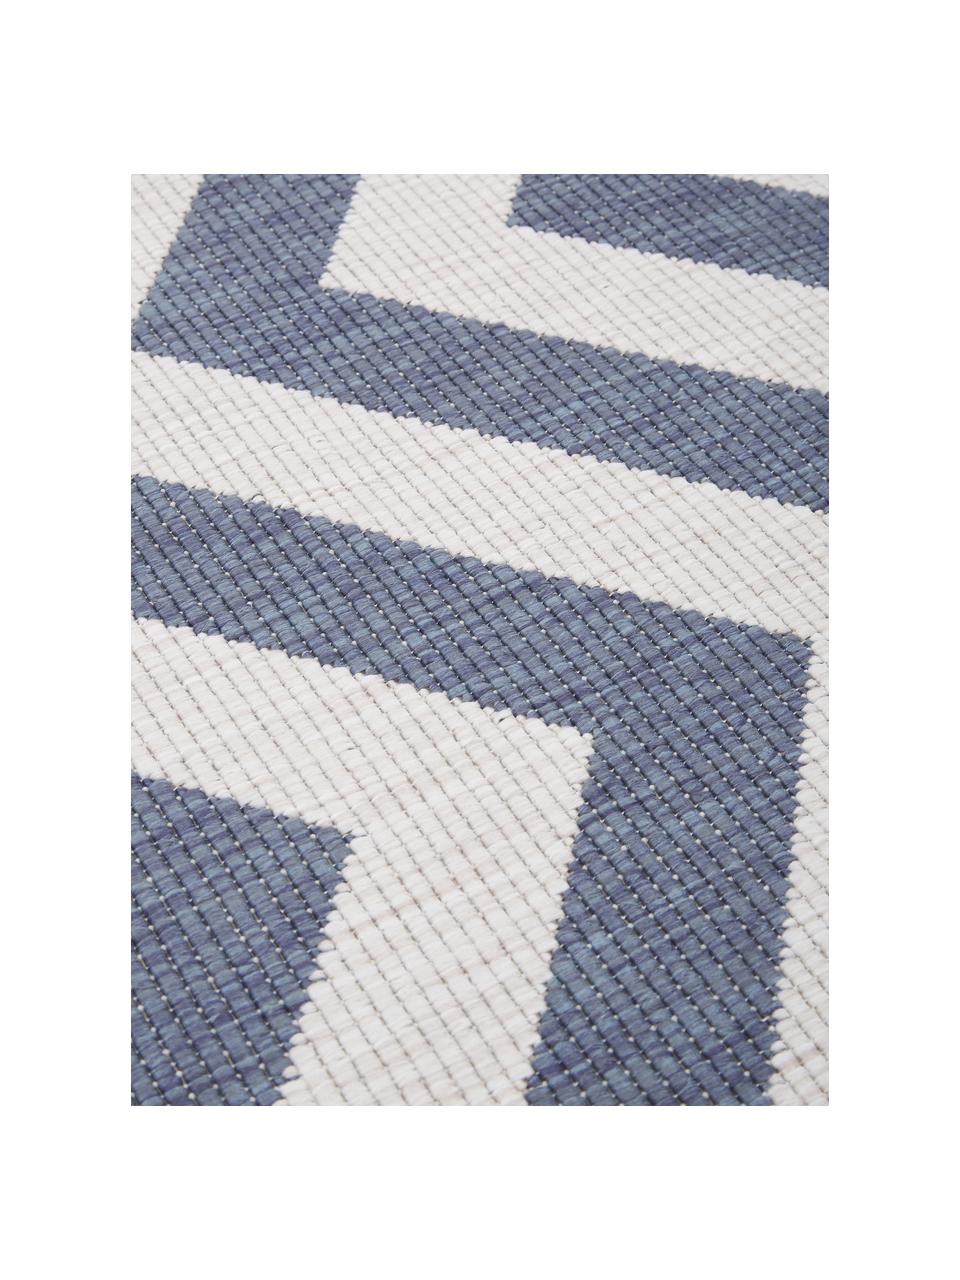 Vnitřní a venkovní koberec s klikatým vzorem Palma, oboustranný, Modrá, krémová